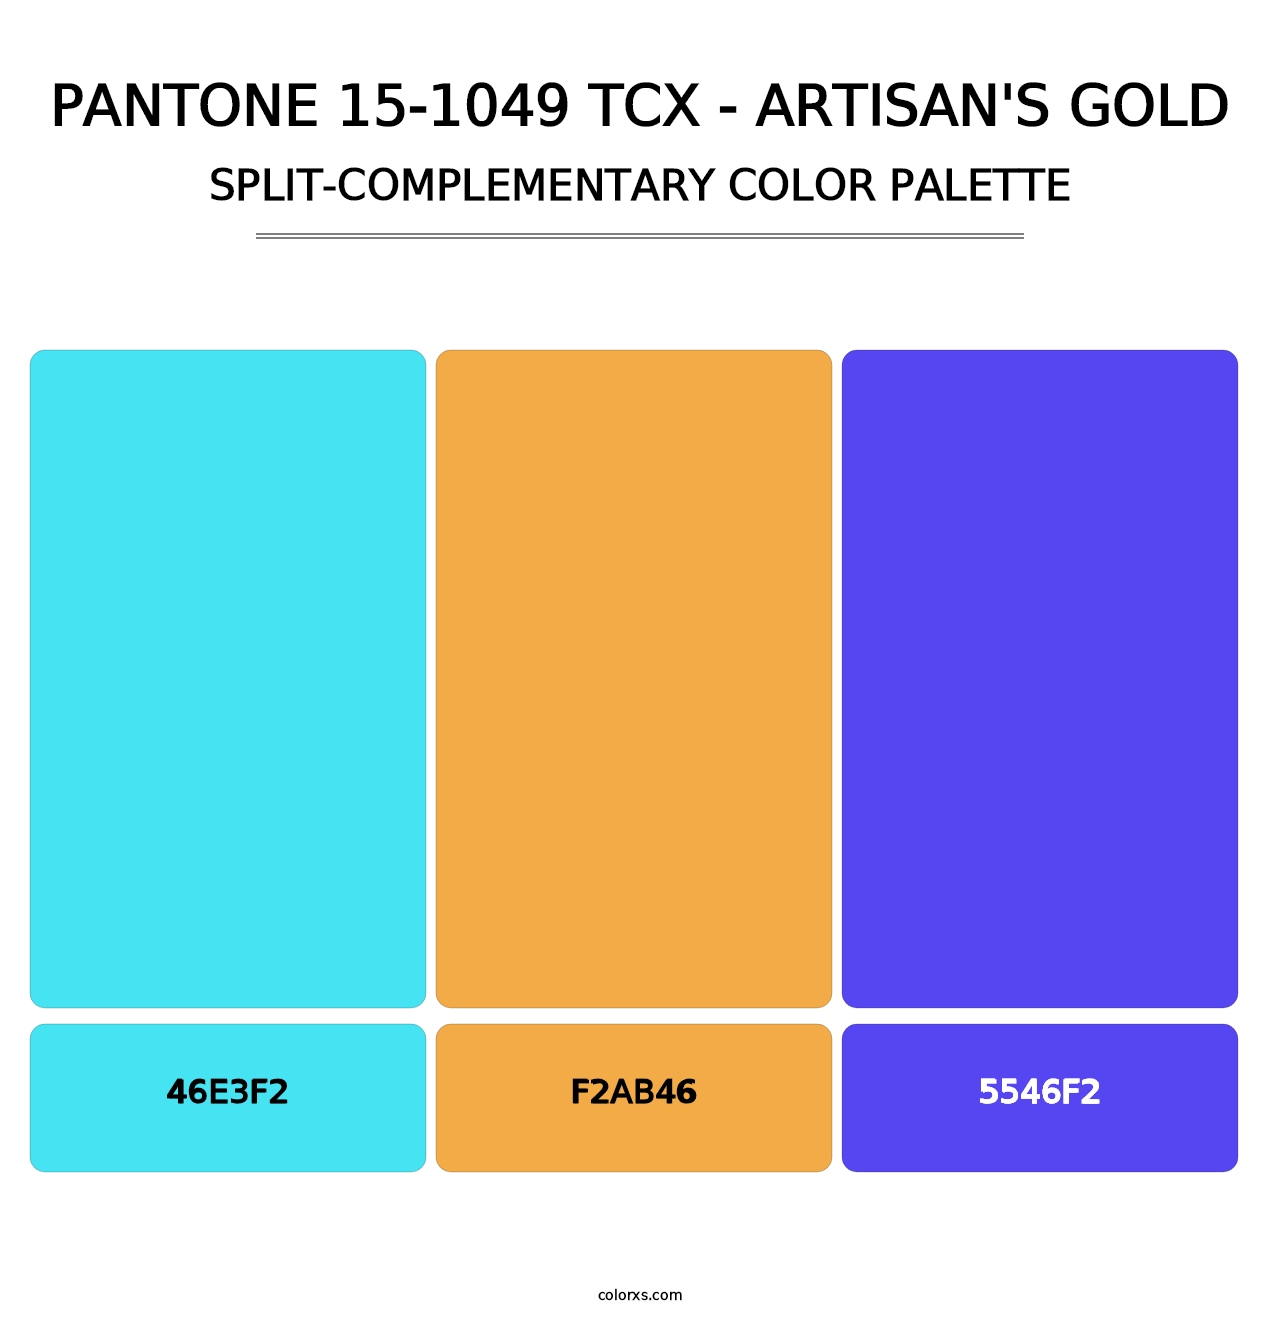 PANTONE 15-1049 TCX - Artisan's Gold - Split-Complementary Color Palette